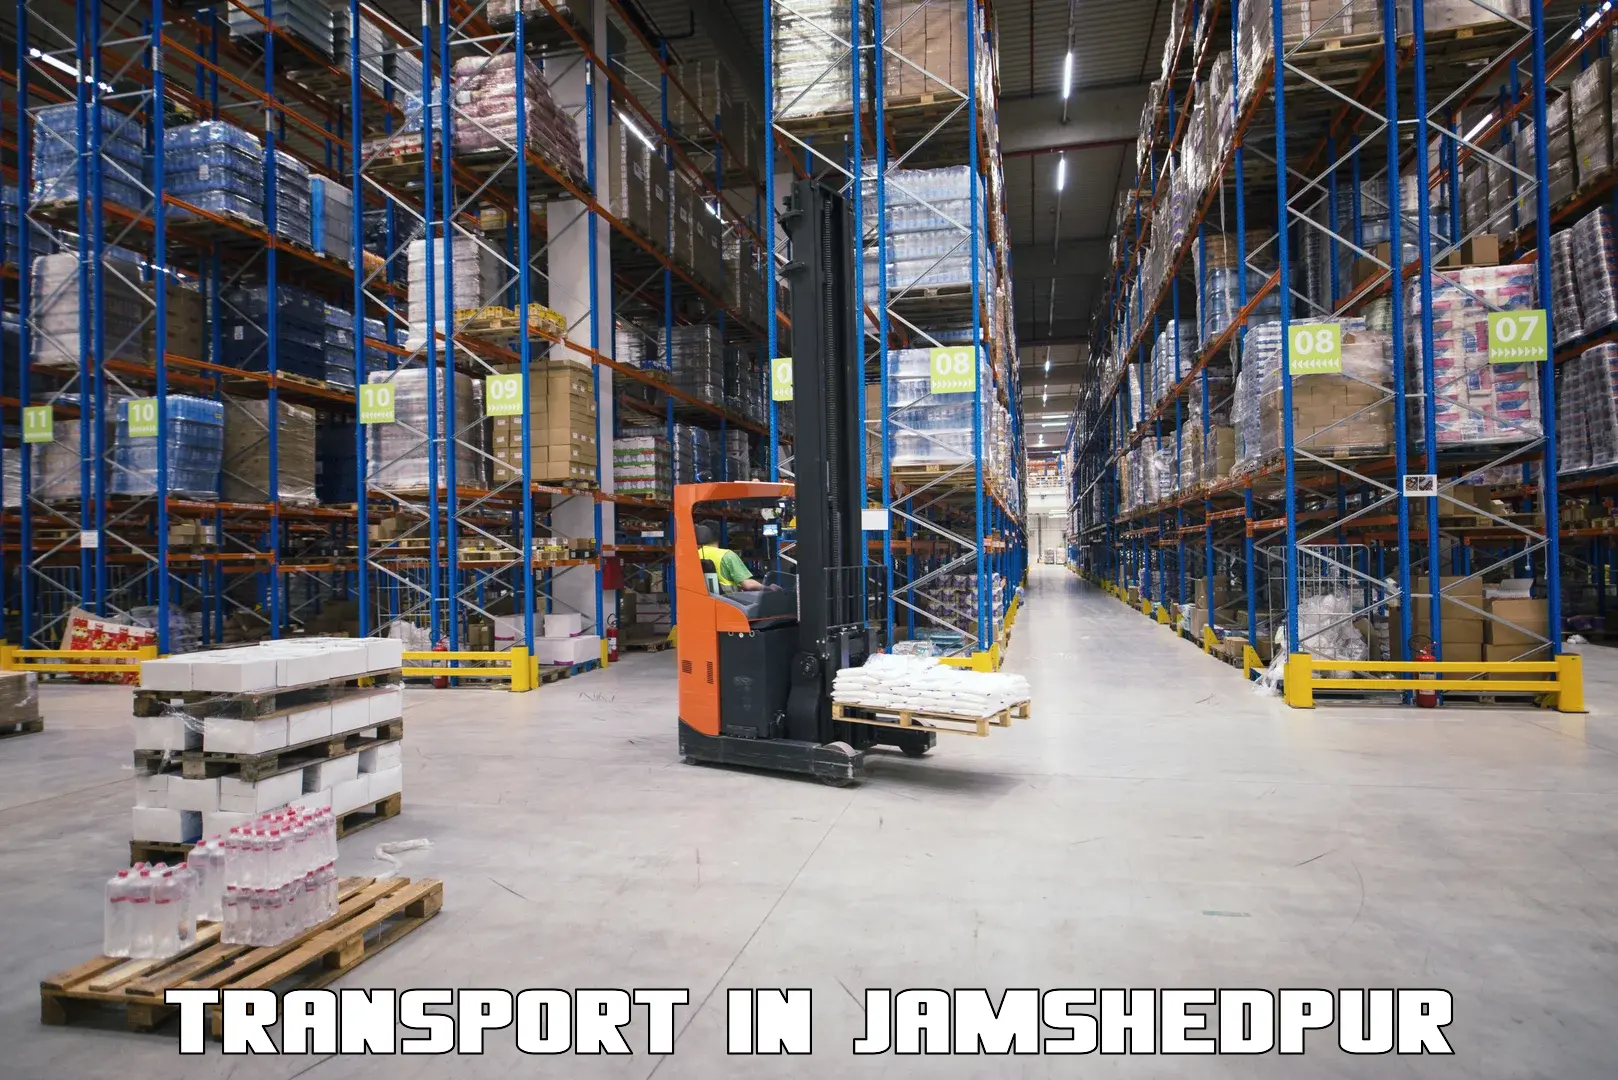 Transport services in Jamshedpur